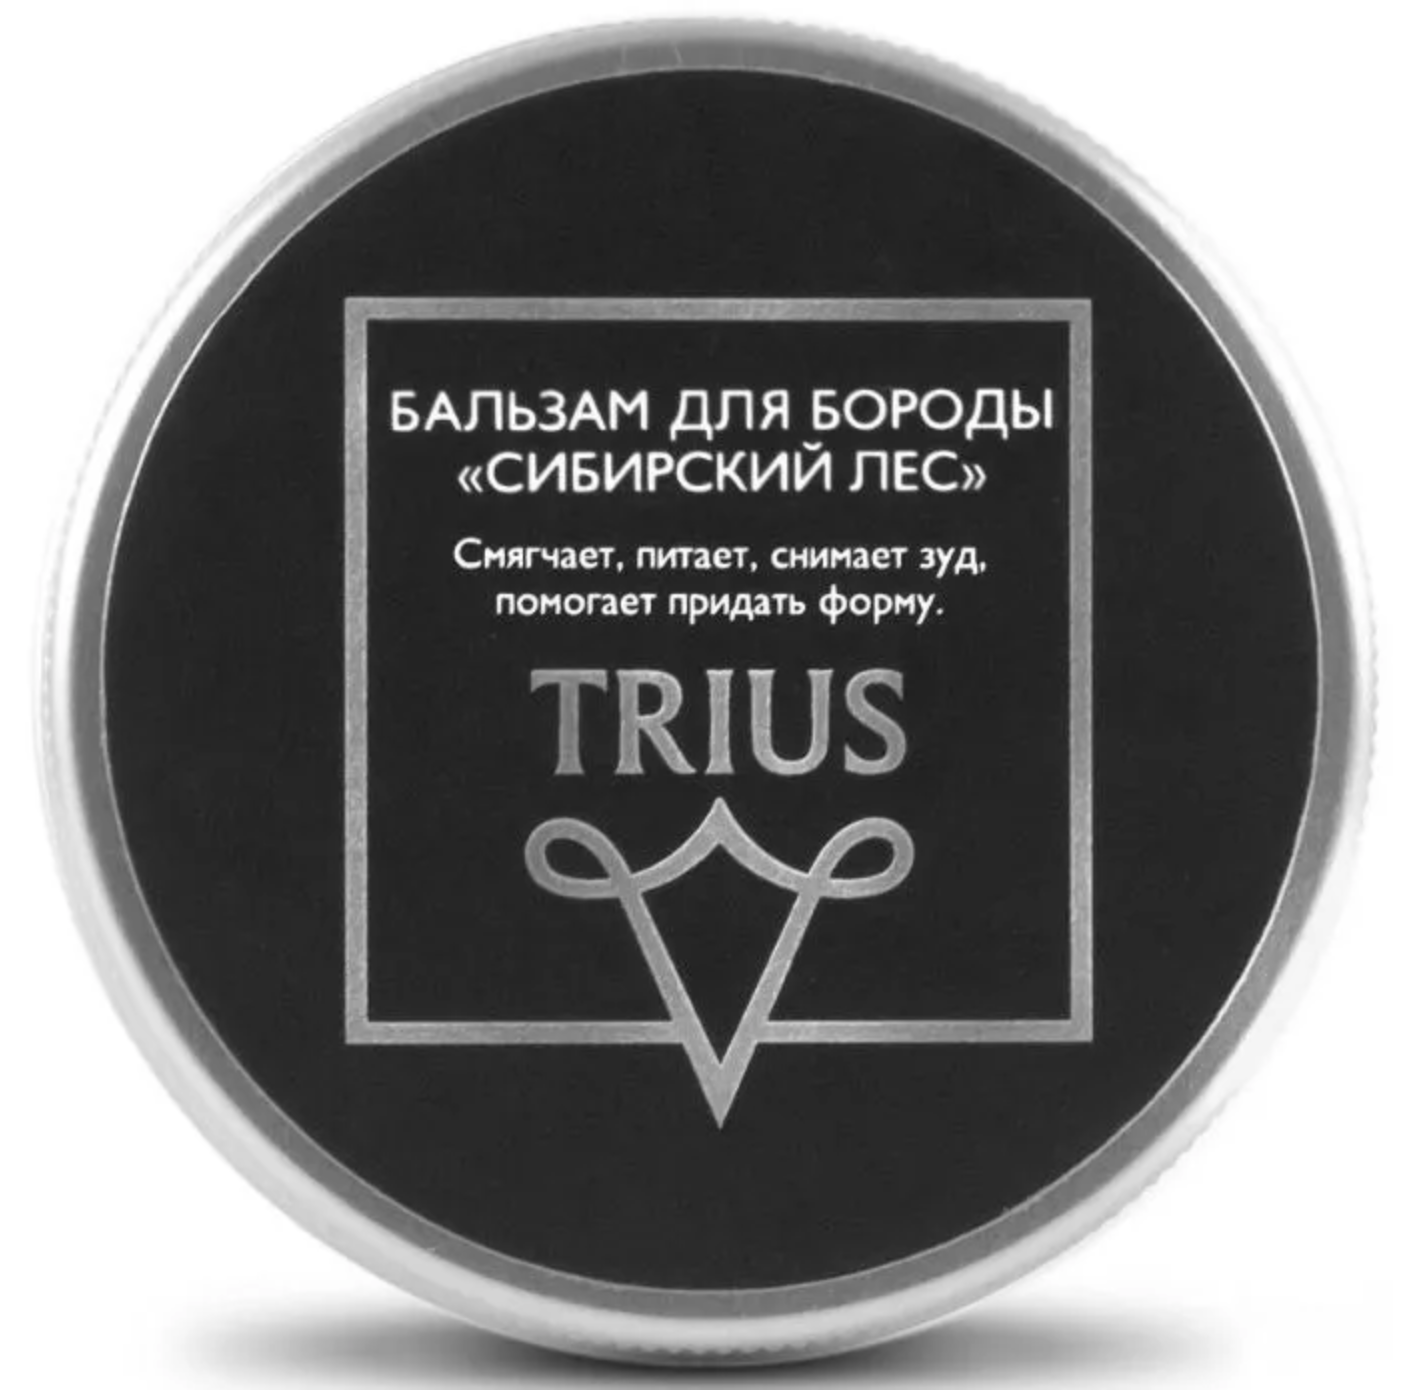 Trius Beard Balm Питательный, увлажняющий и смягчающий бальзам для бороды Сибирский Лес Триус 50 мл